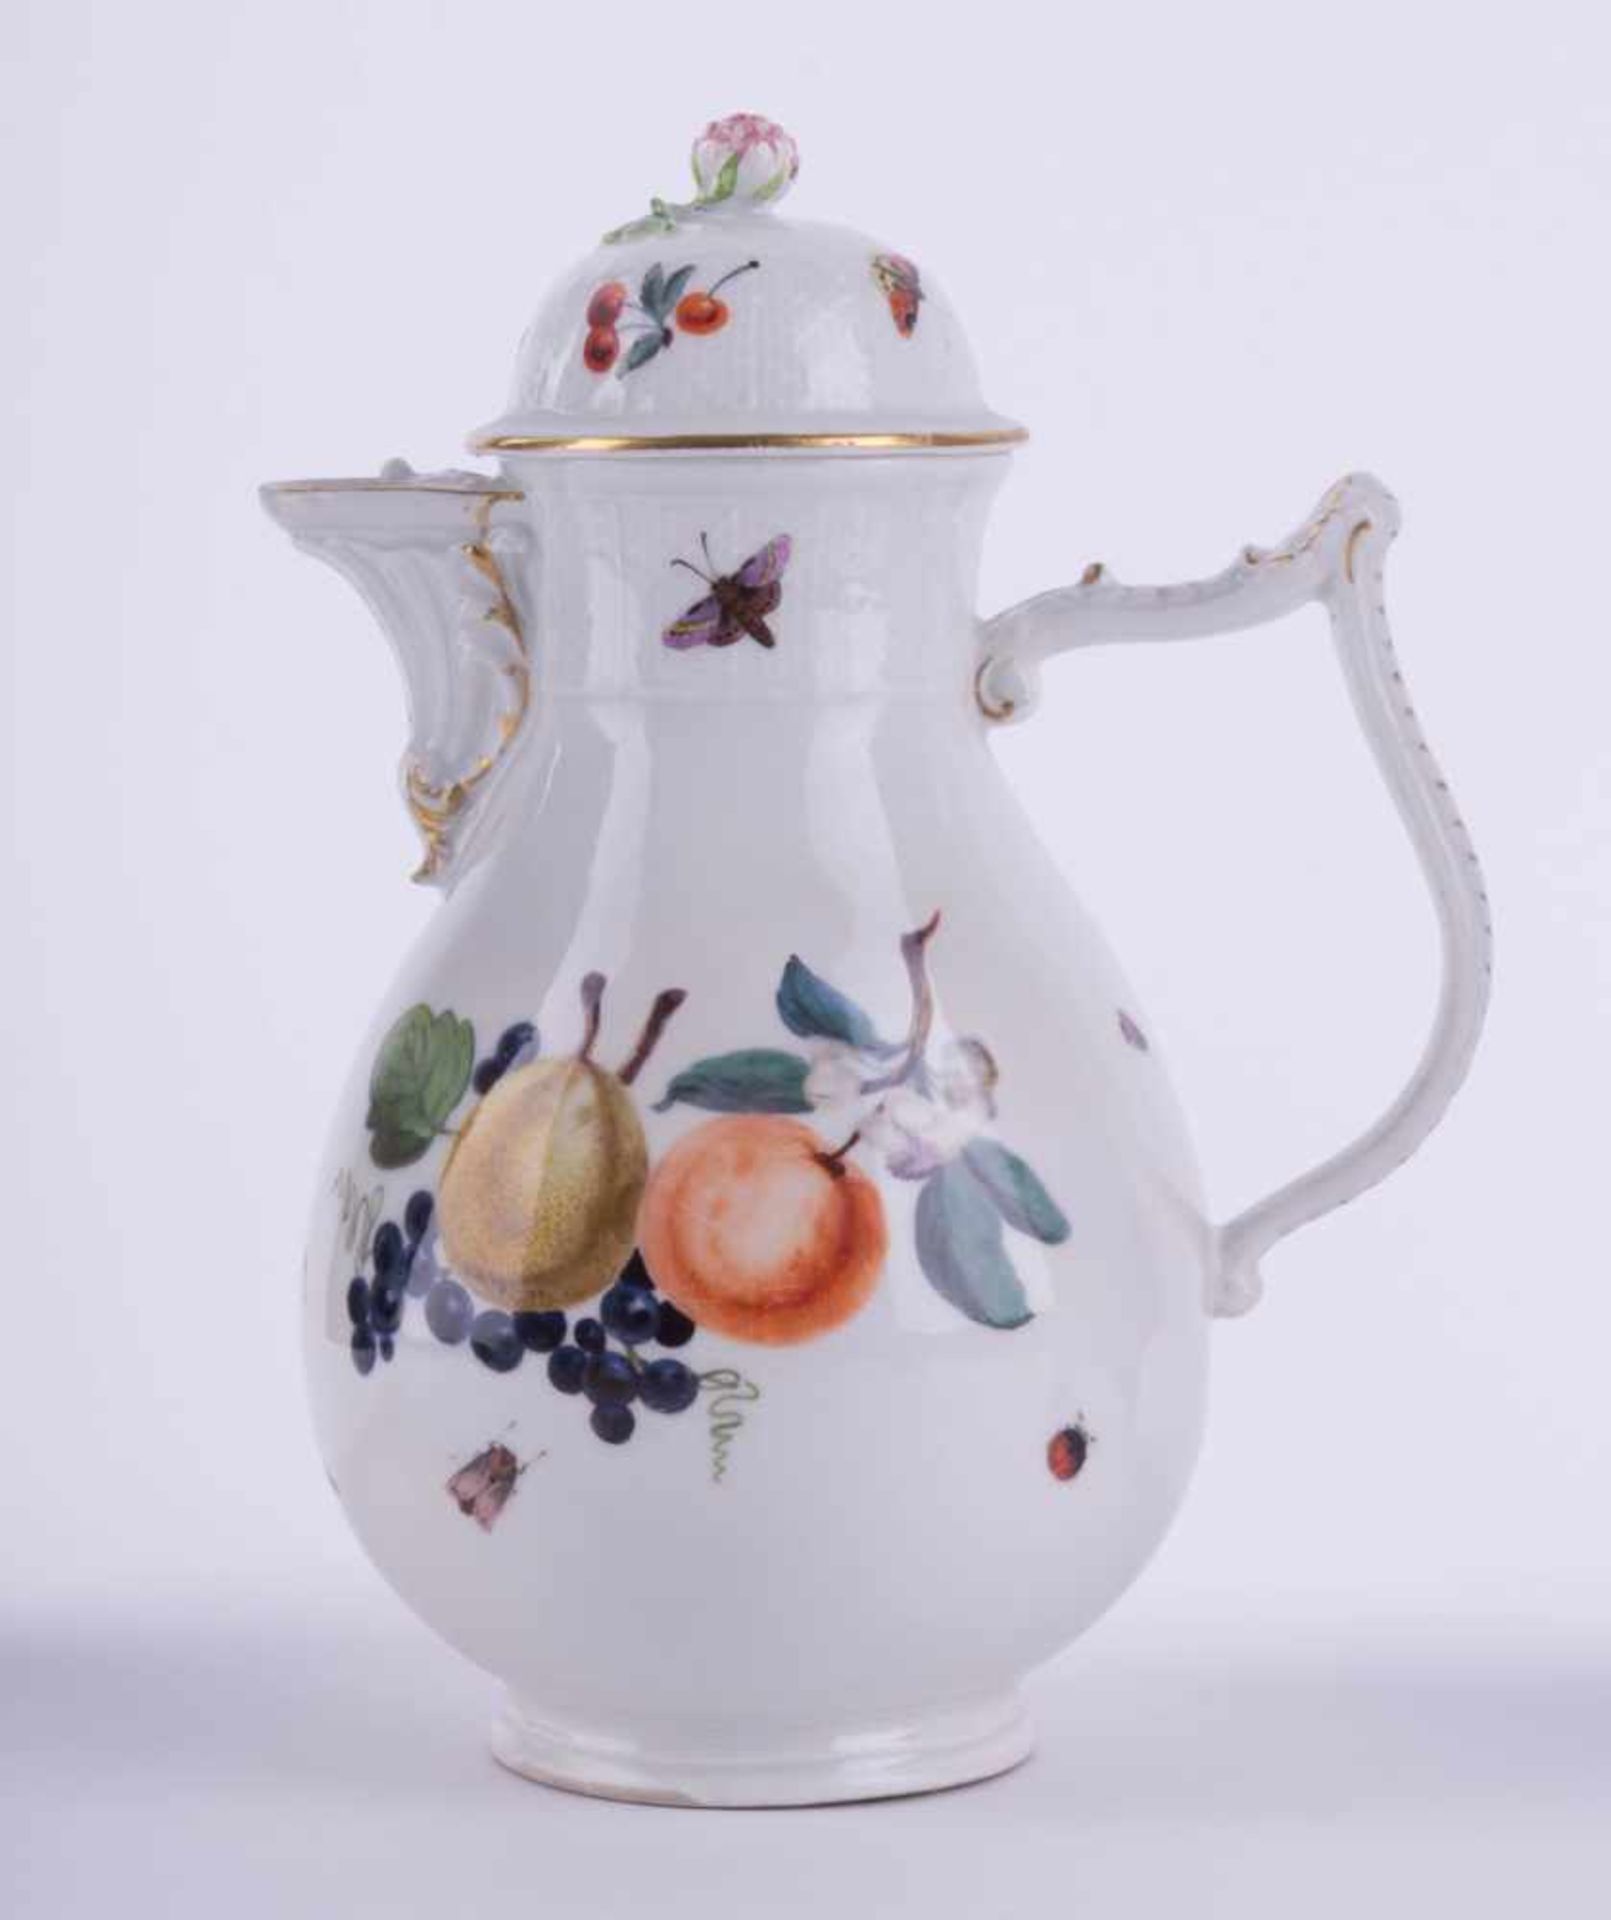 Kaffeekanne Meissen um 1740 / coffeepot, Meissen, about 1740 Modell von J.J. Kaendler, farbig